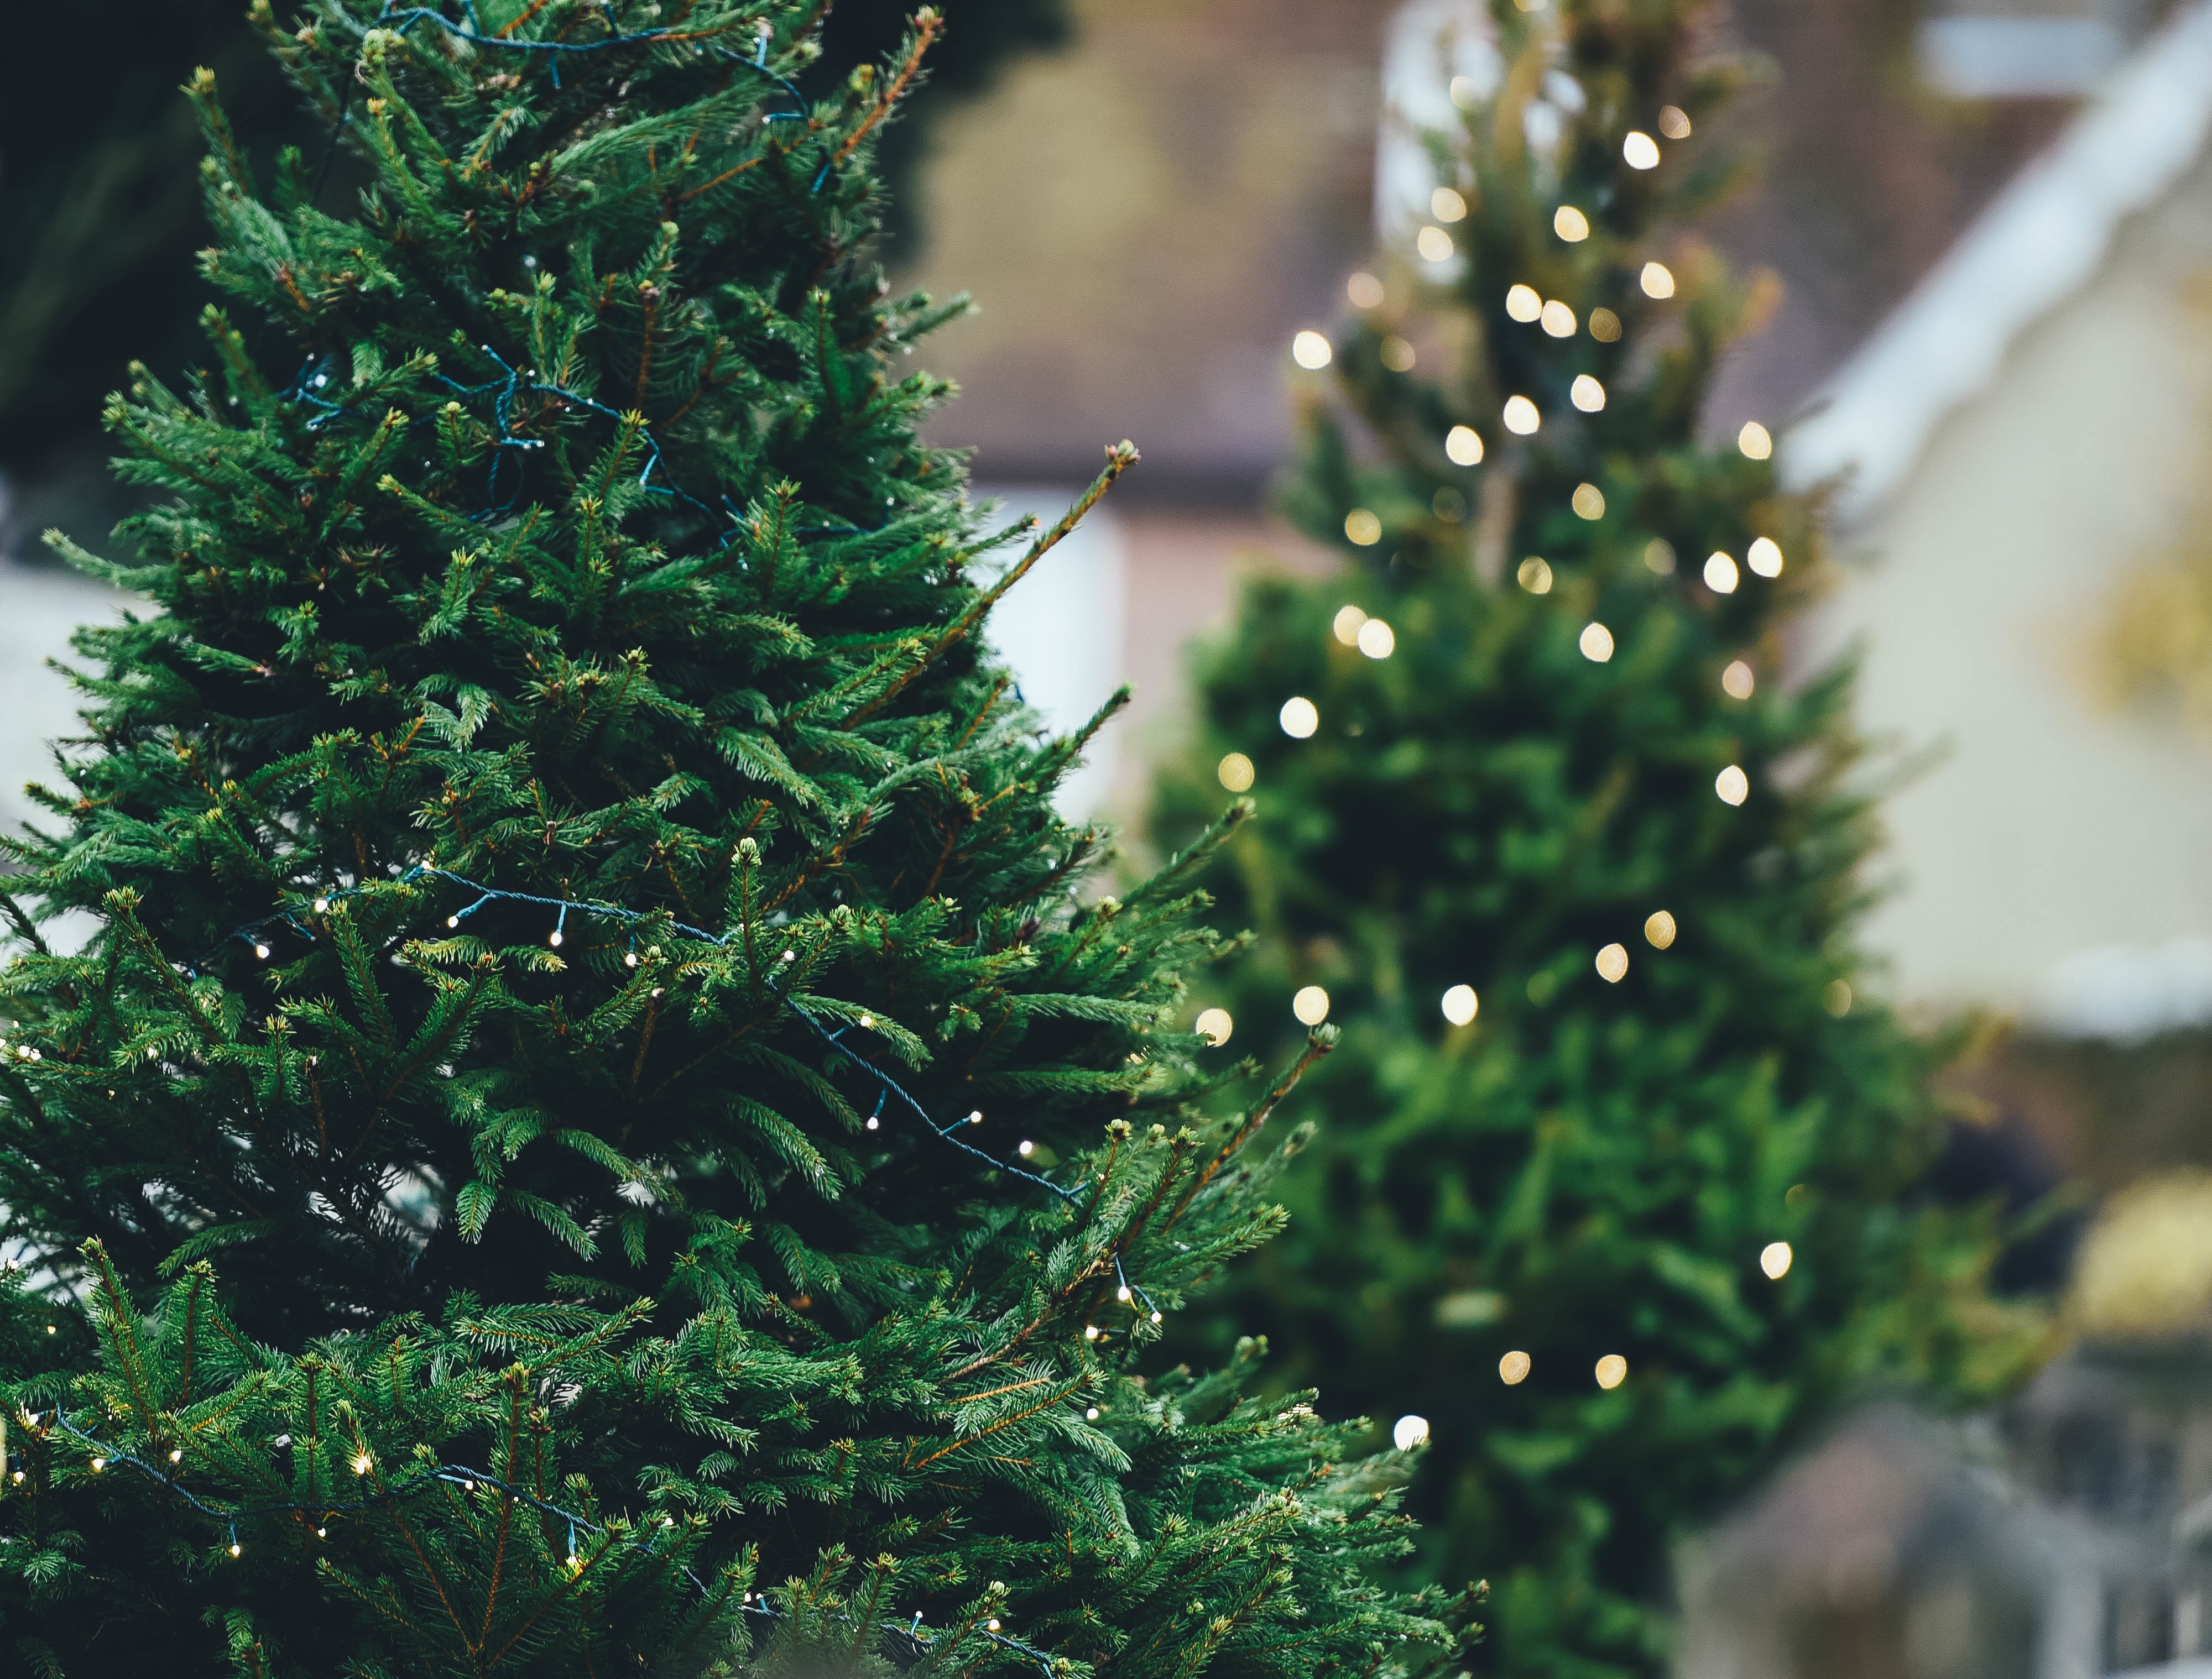 Elegir qué árbol presidirá tu casa en Navidad es difícil, pero te damos algunos consejos que harán que la elección sea más fácil.